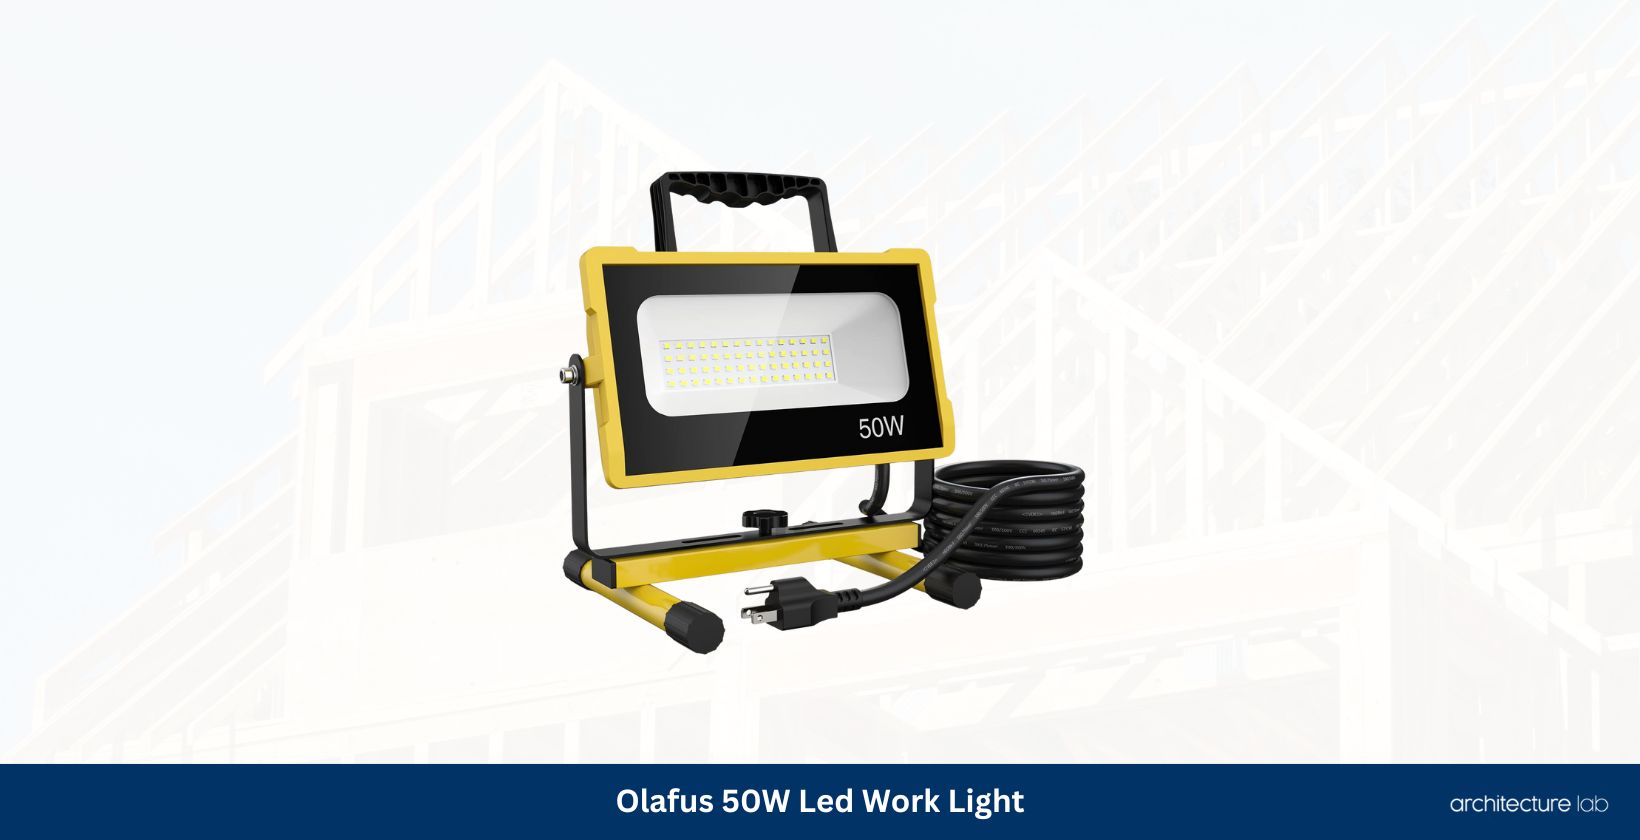 Olafus 50w led work light